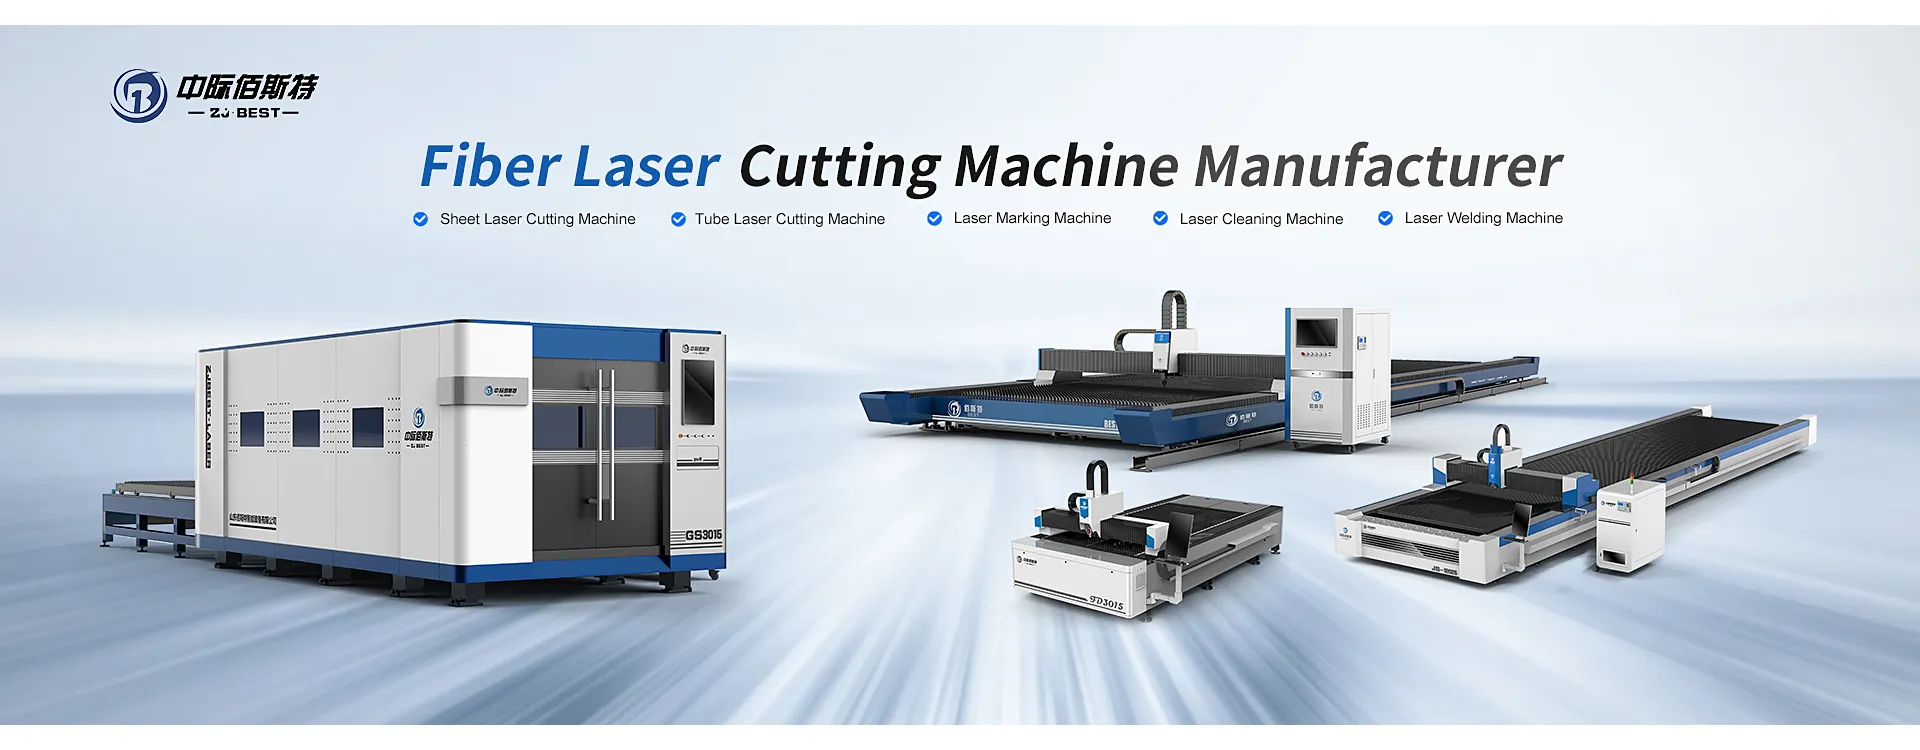 Machine de découpe laser pour tubes